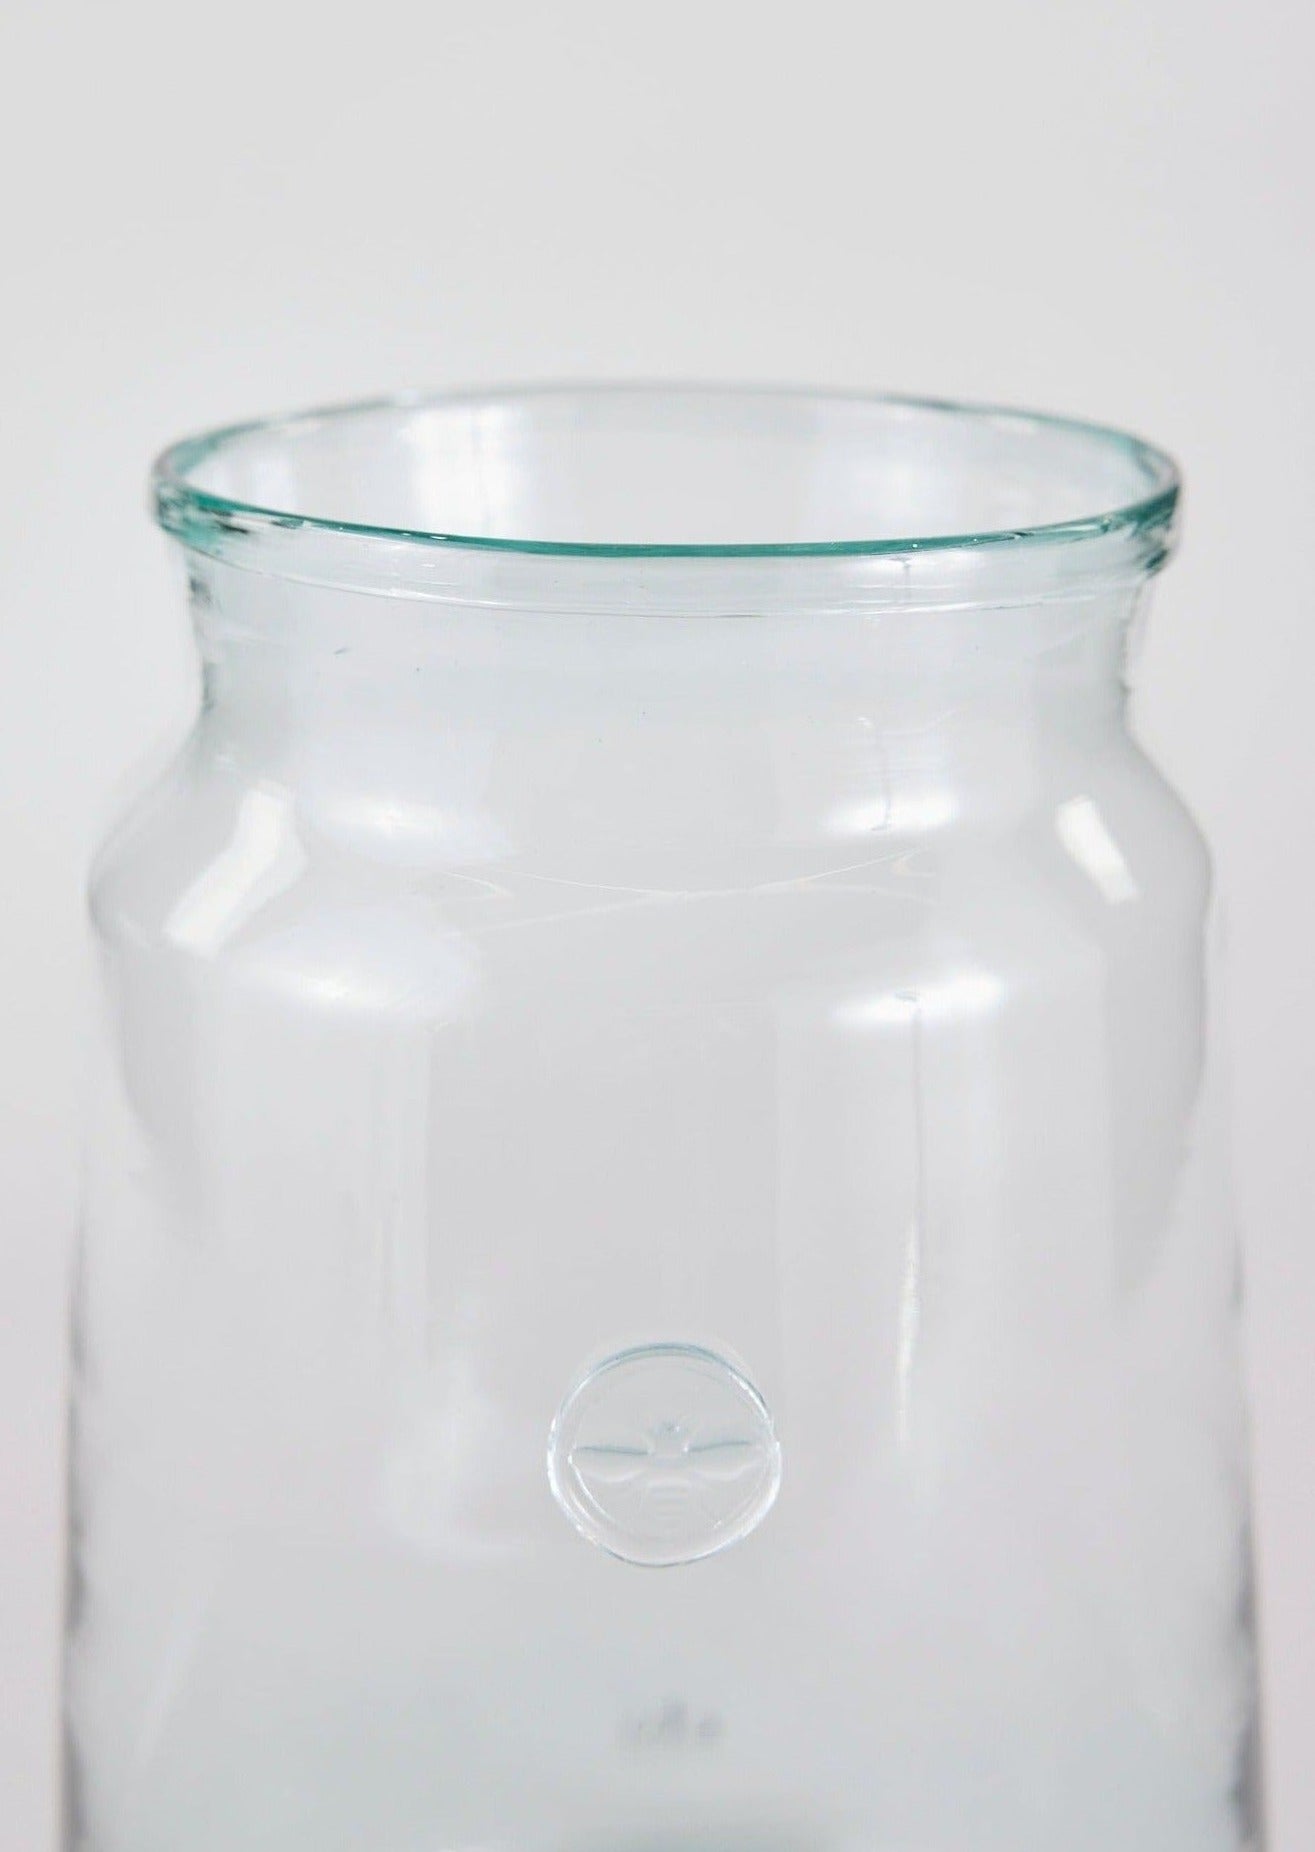 https://www.afloral.com/cdn/shop/files/Large-French-Mason-Jar-Vase-in-Glass.jpg?v=1689341480&width=1500